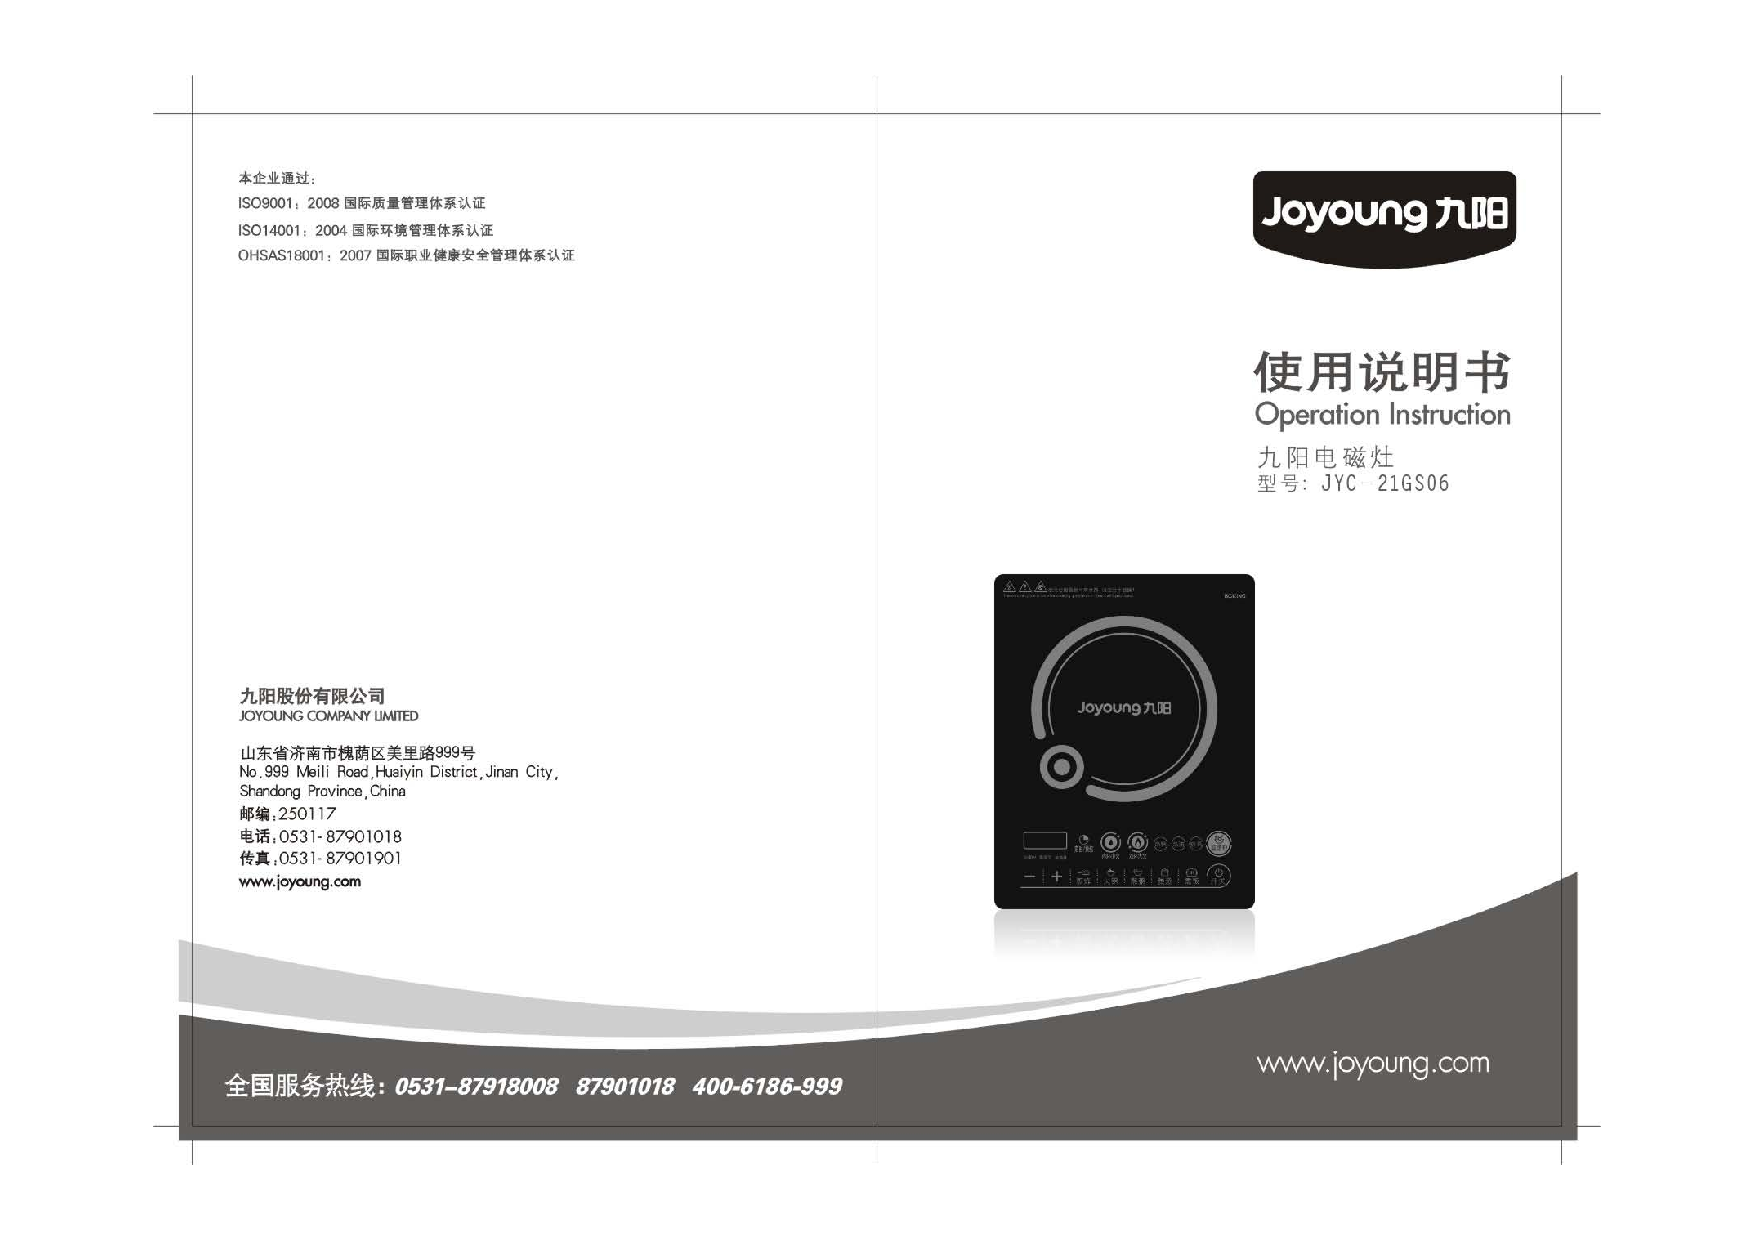 九阳 Joyyoung JYC-21GS06 使用说明书 封面